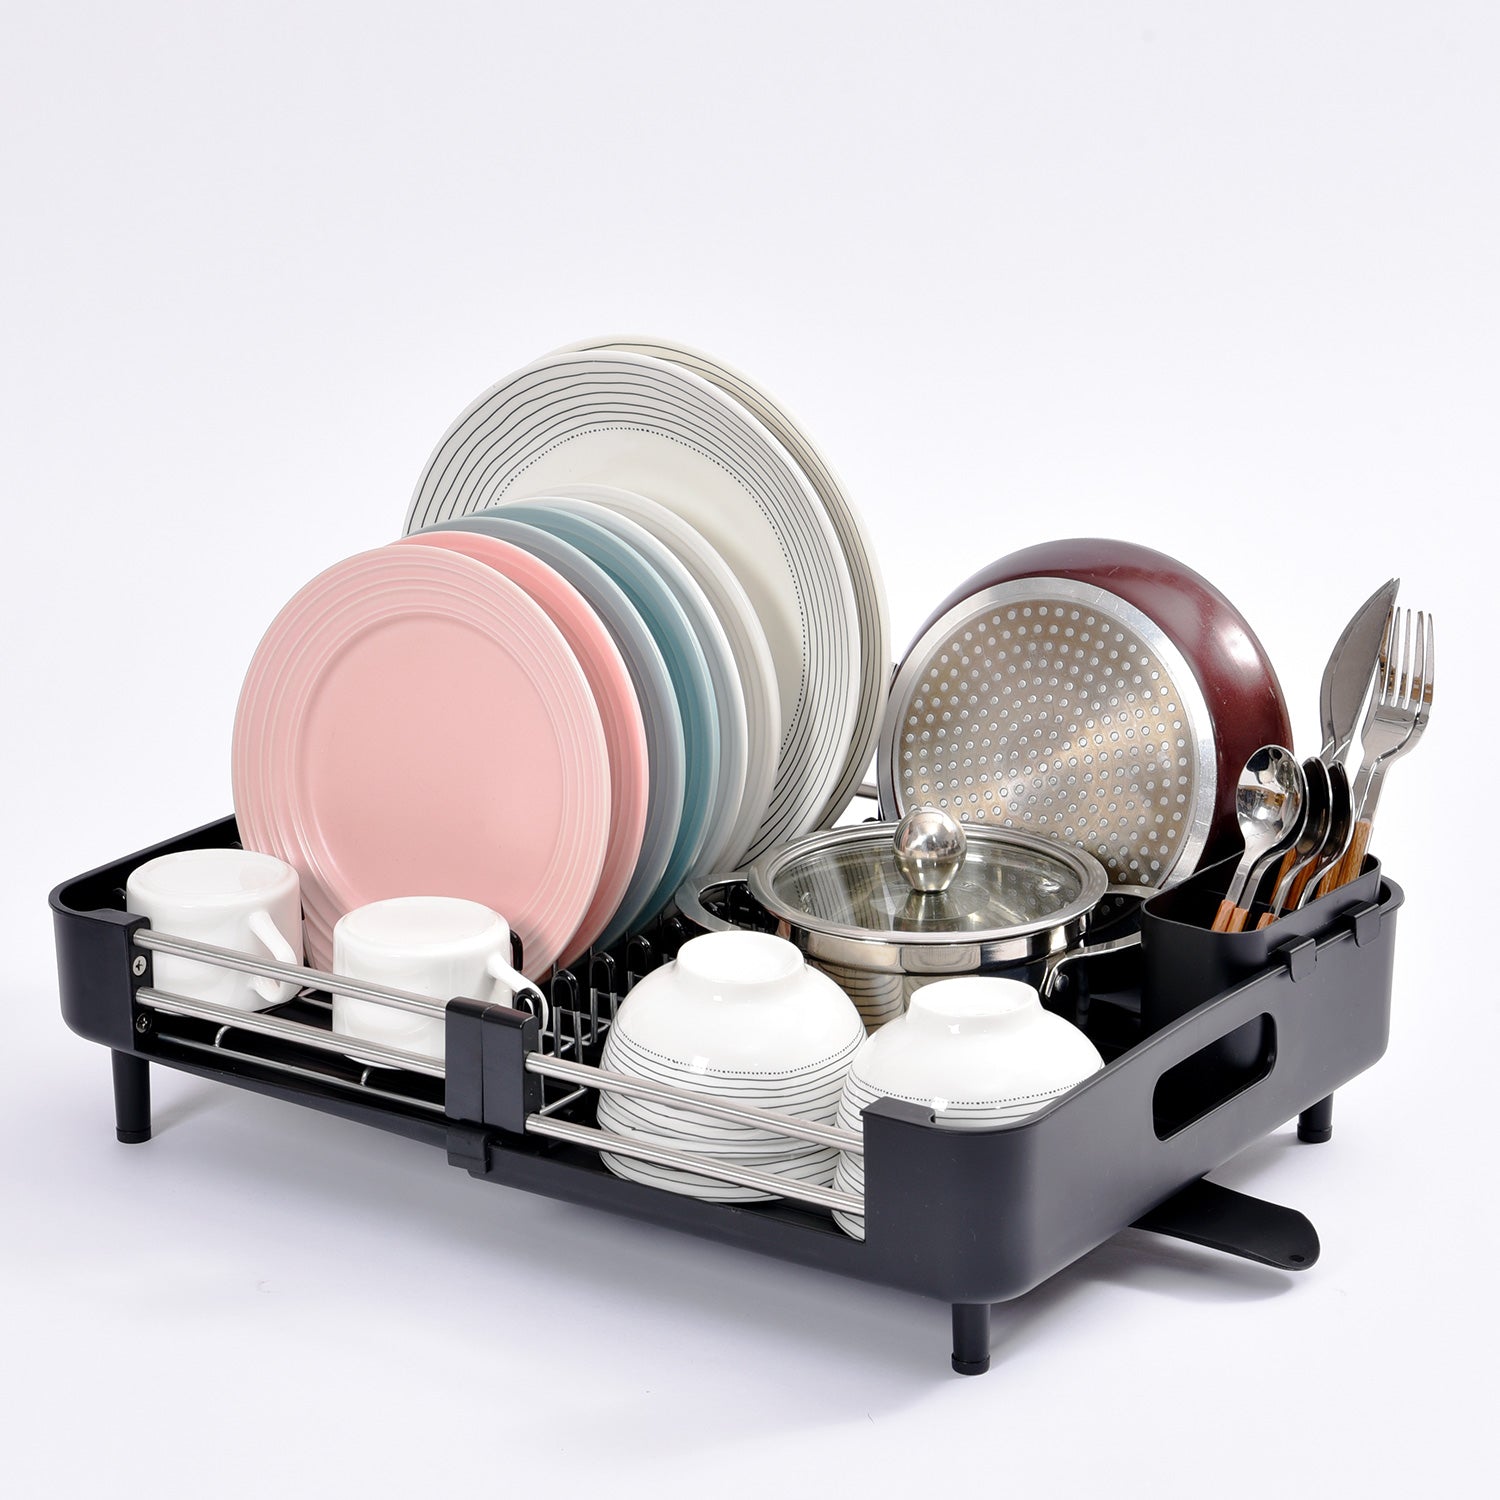 KK Kingrack Aluminum Extendable Dish Drying Rack, Adjustable Dish